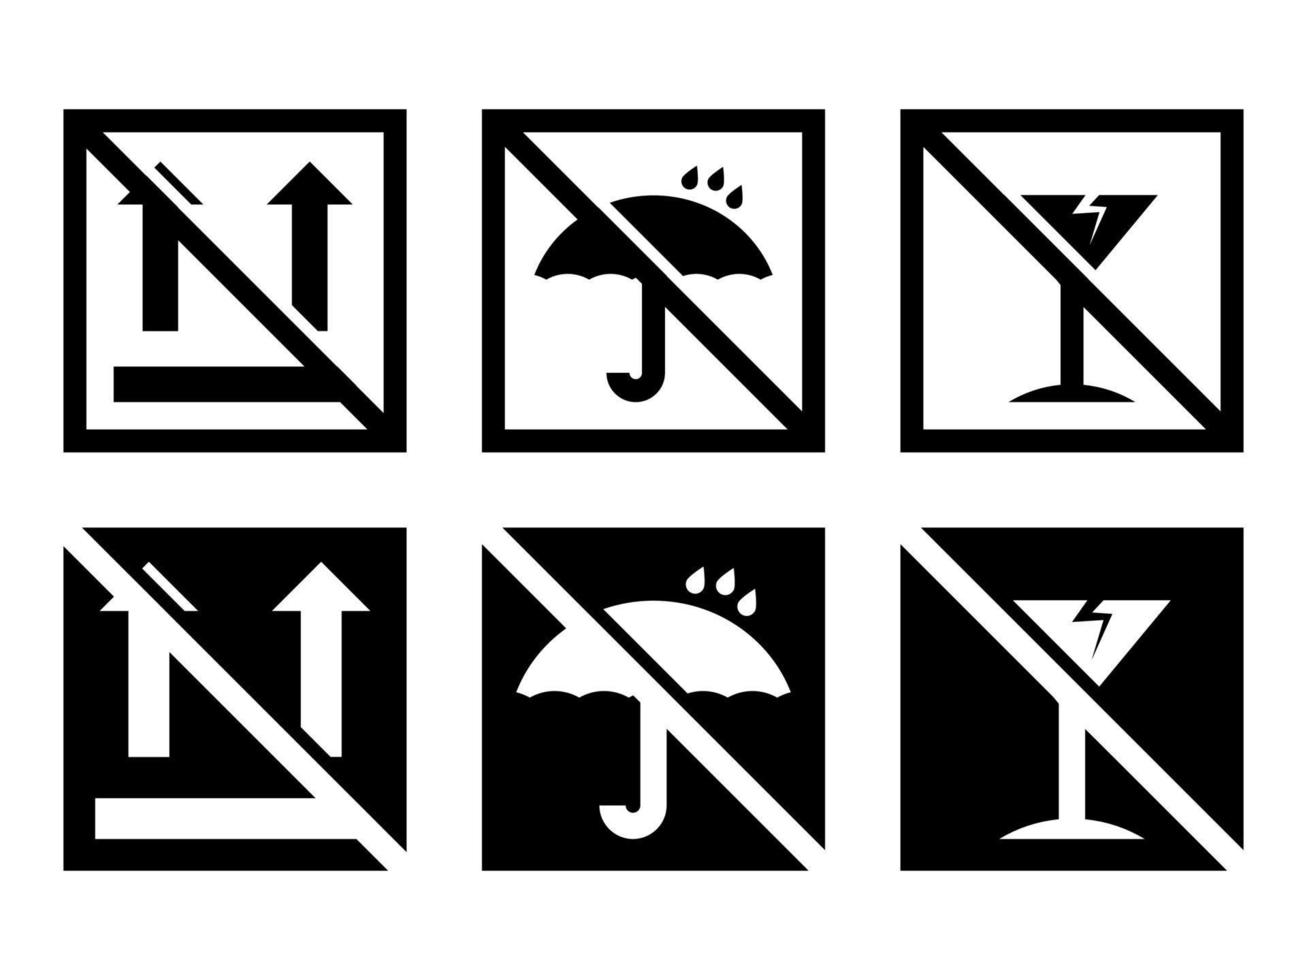 boîte fragile barrée, les panneaux vectoriels d'avertissement de fret définis dans des icônes de style moderne sont situés sur des arrière-plans blancs et noirs. le pack contient six icônes. vecteur